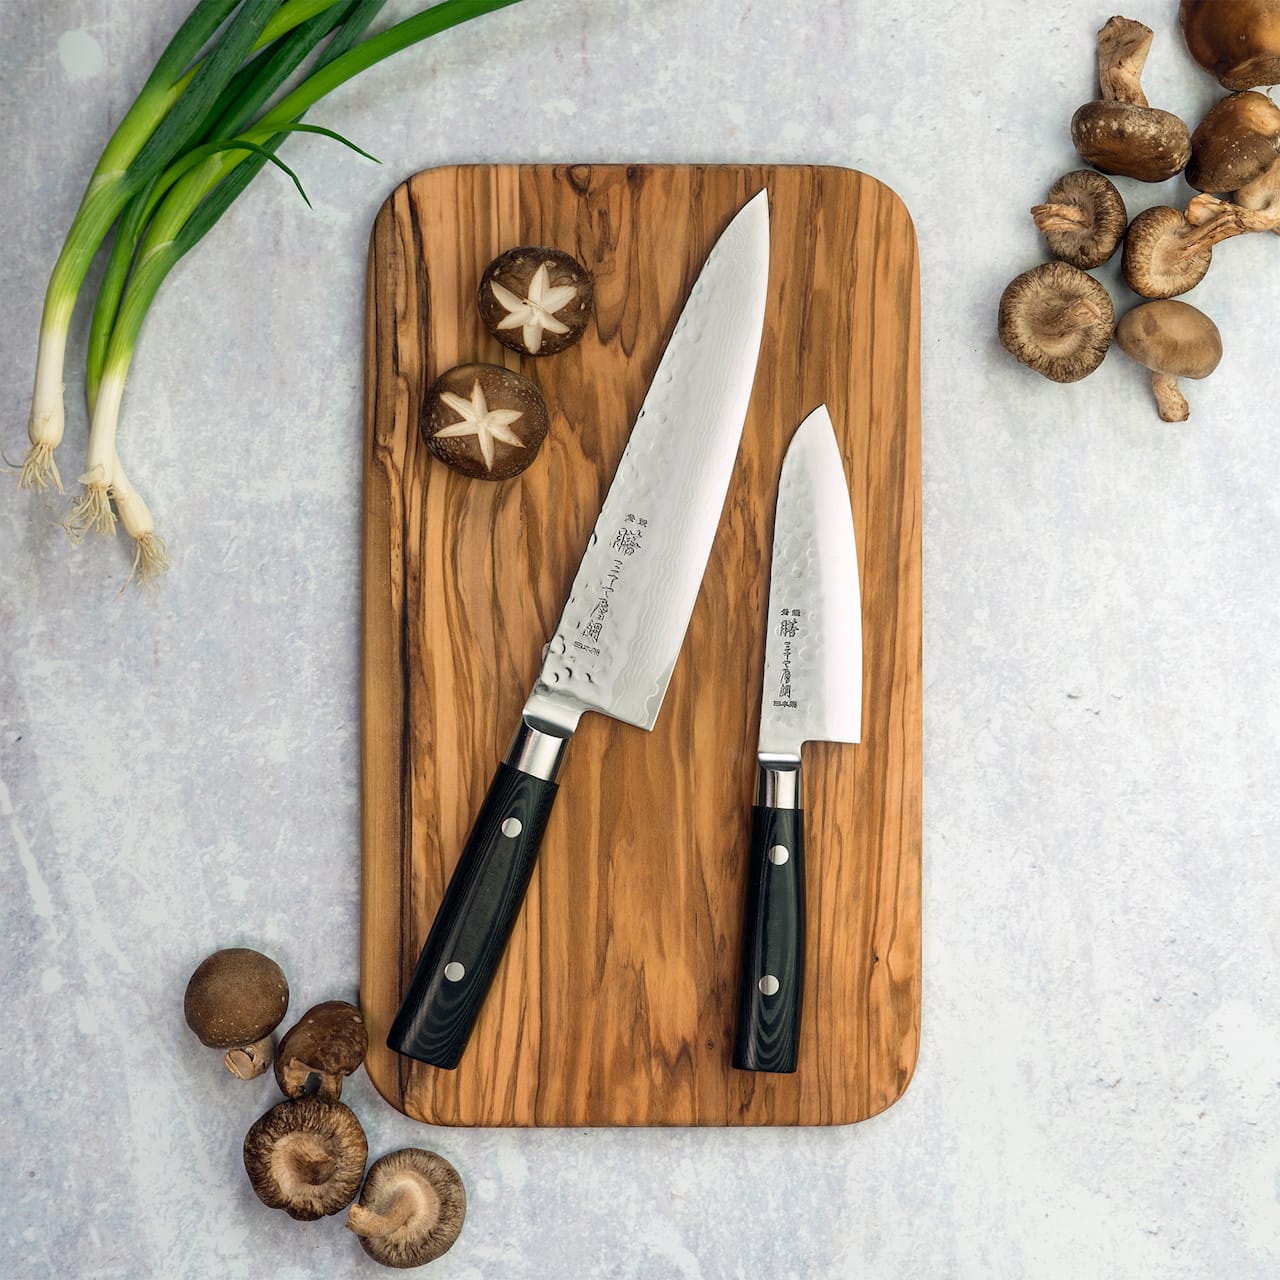 Zen Chef's knife